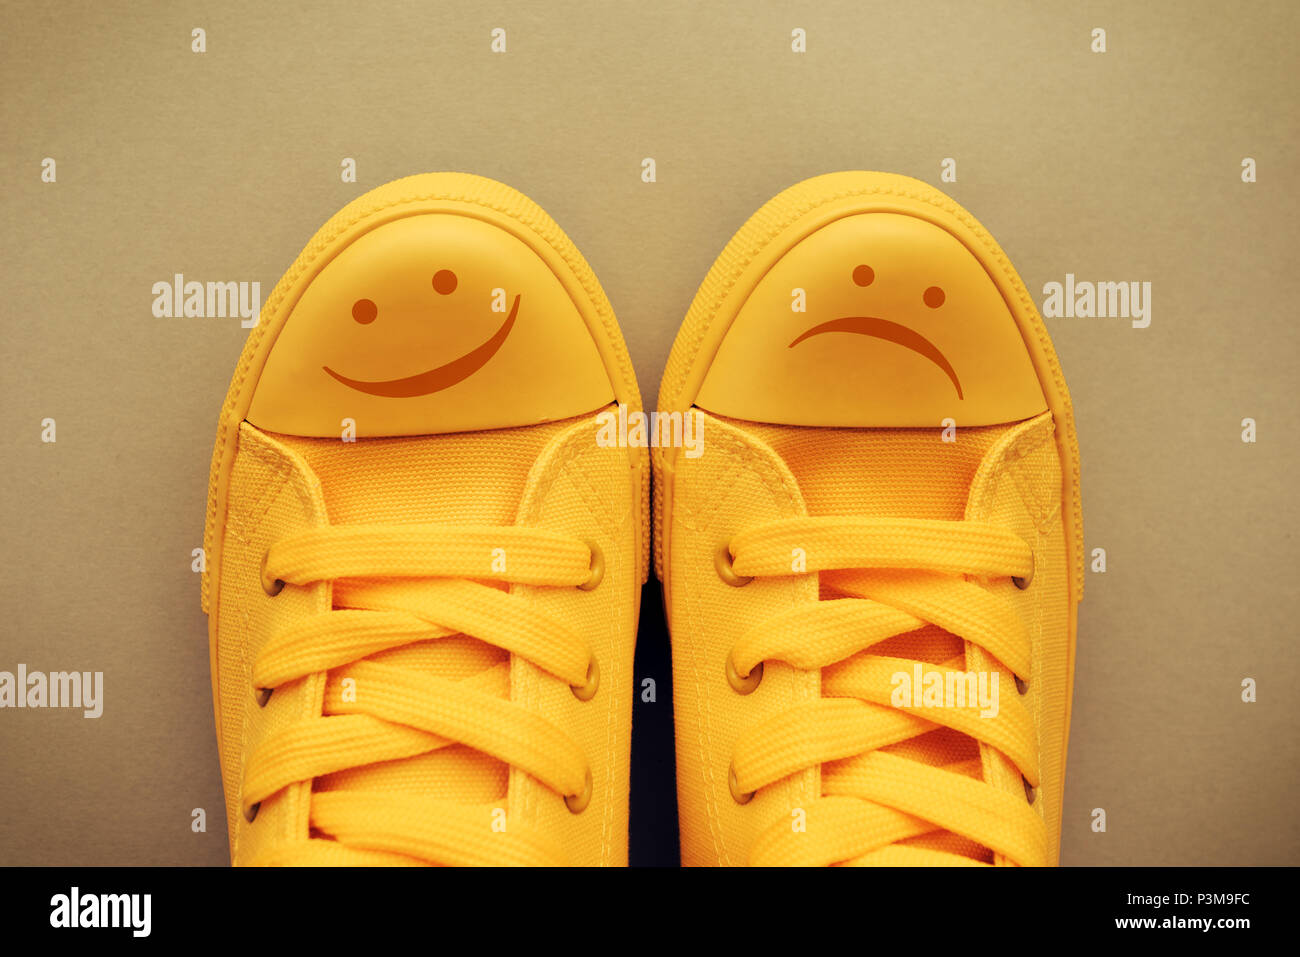 Heureux et triste émoticône smiley jaune symbole de sneakers, conceptual image pour les sentiments et les émotions d'une jeune personne et les changements d'humeur Banque D'Images